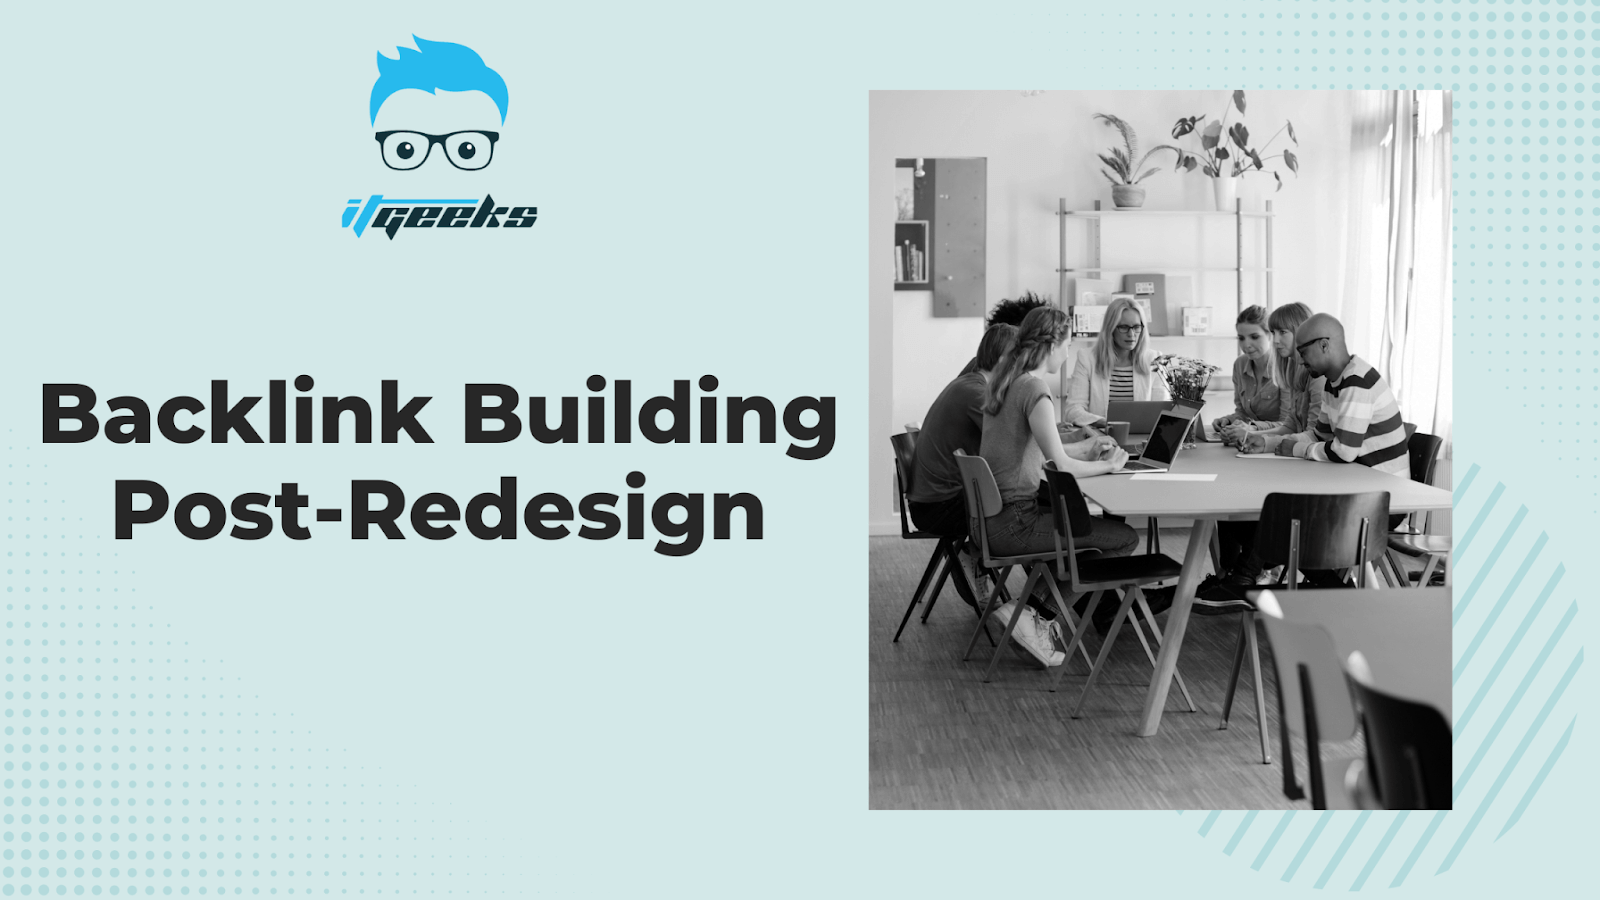 Backlink Building Post-Redesign